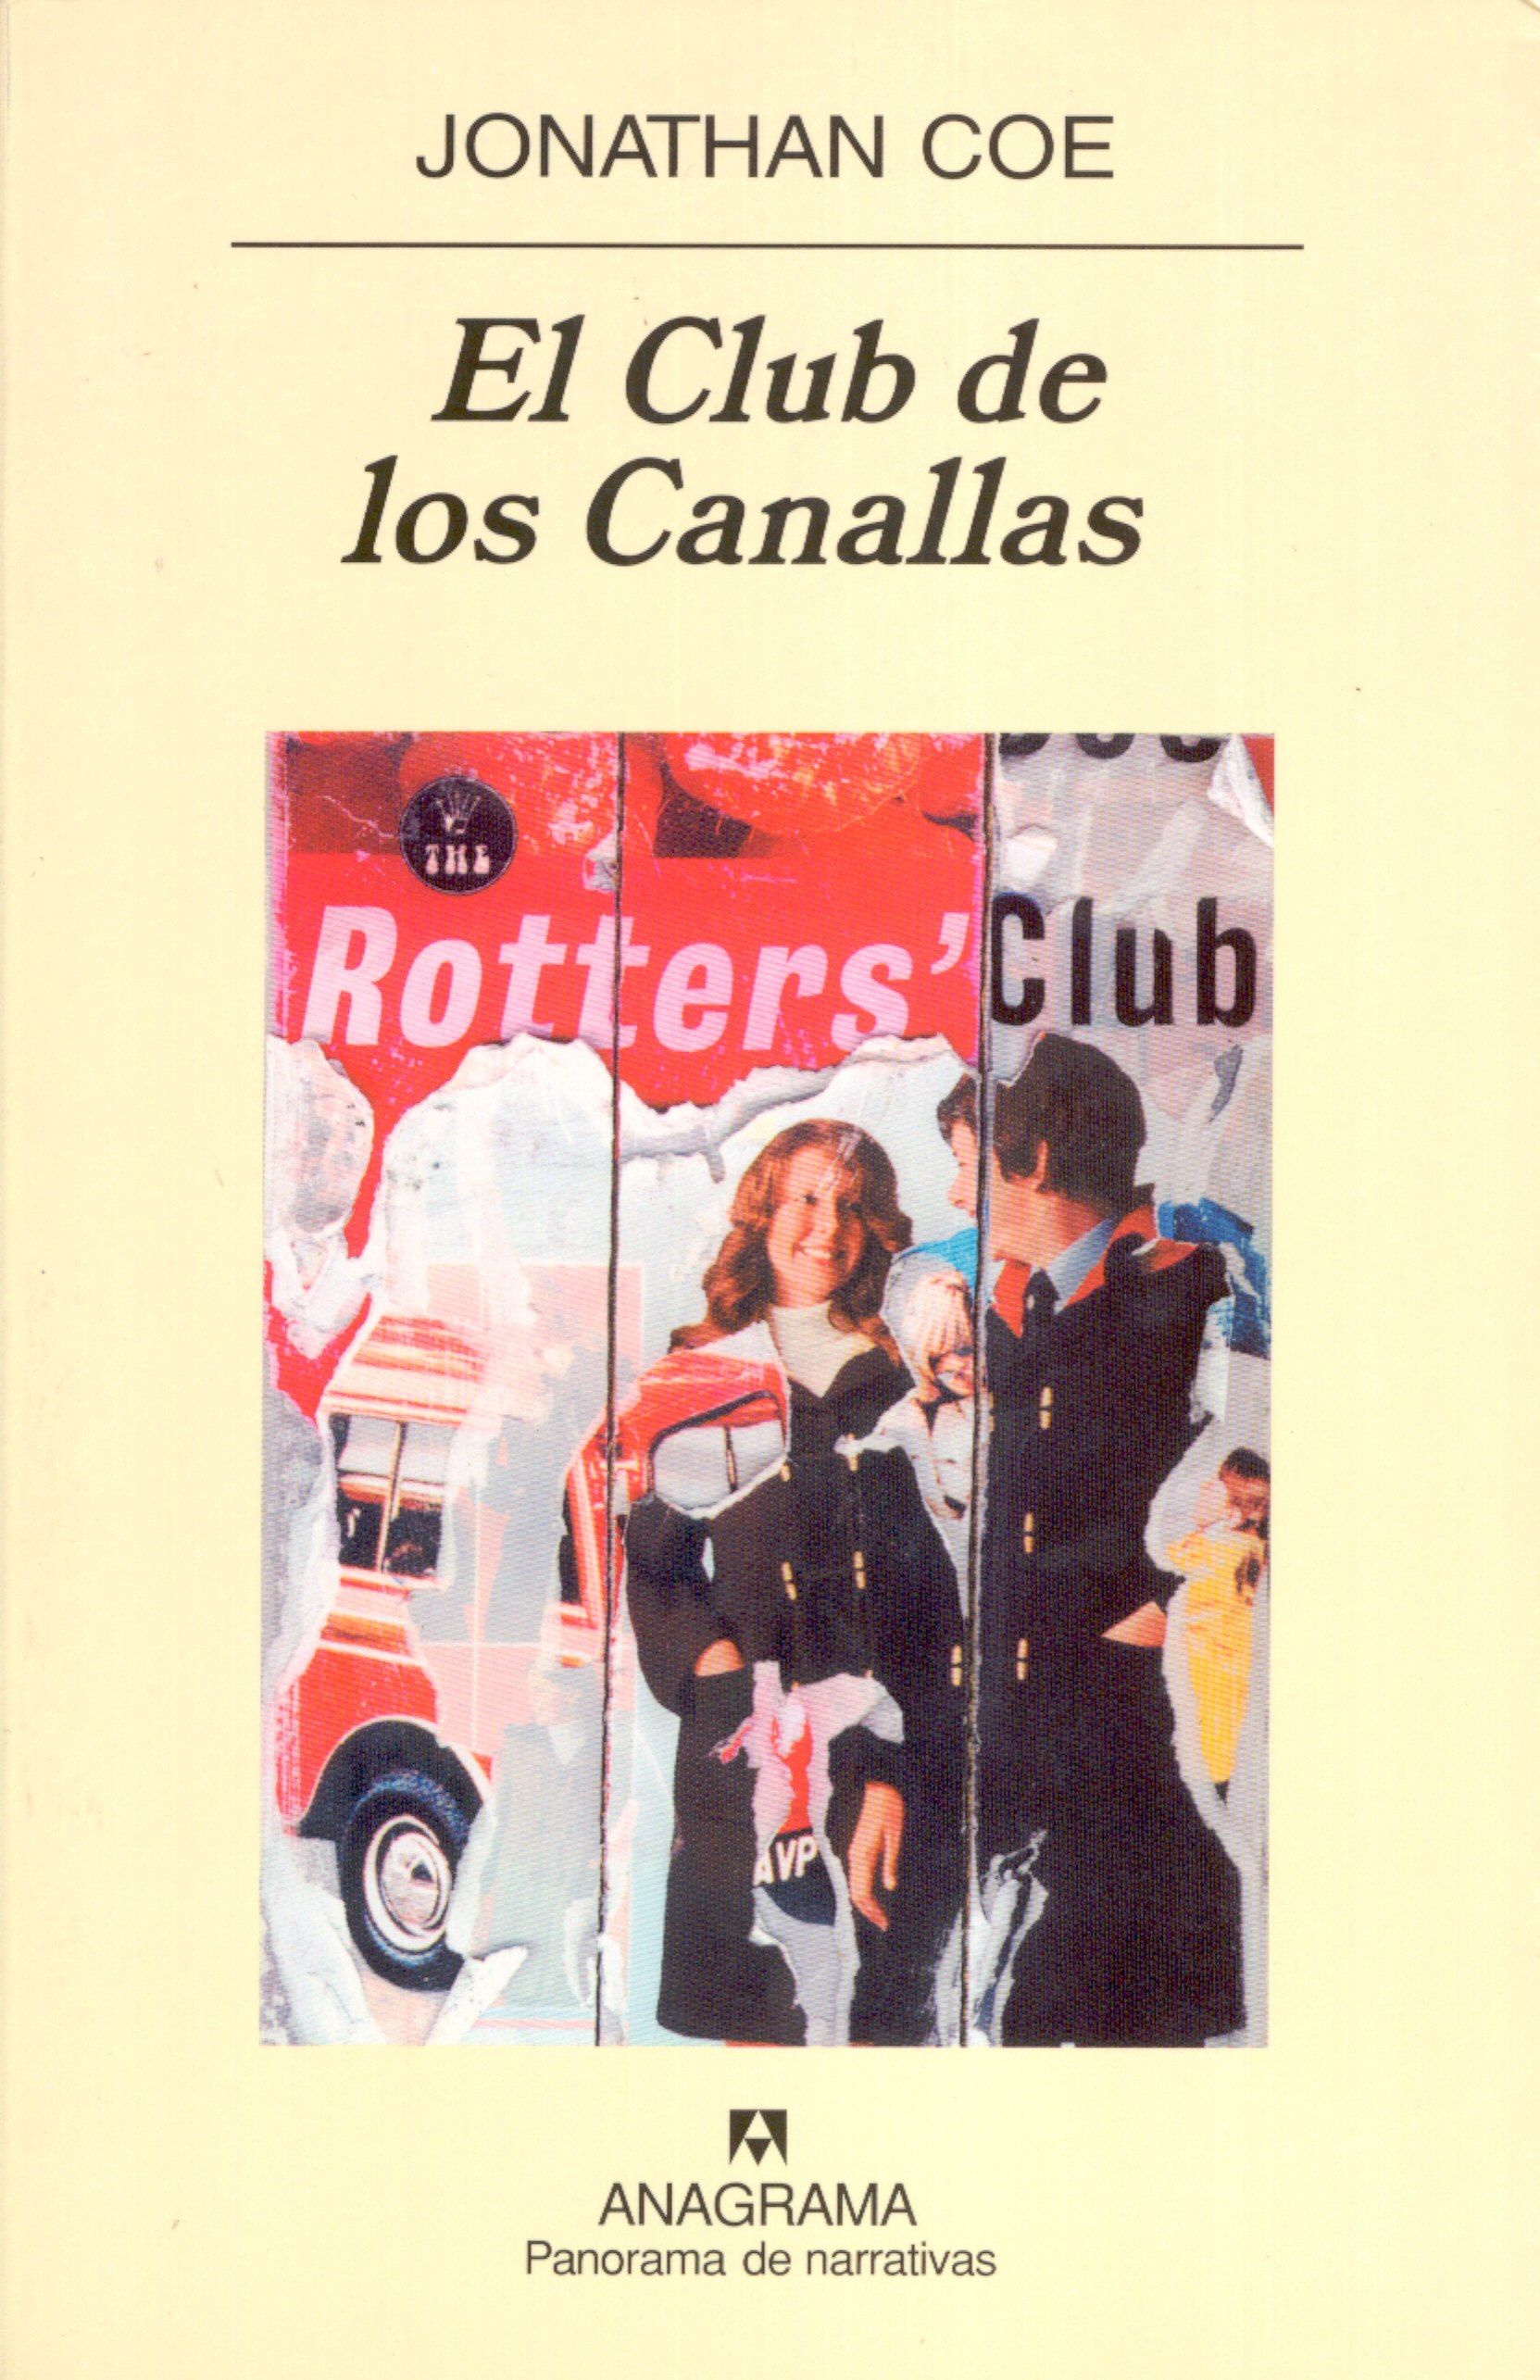 El Club de los Canallas - Coe, Jonathan - 978-84-339-6985-9 - Editorial  Anagrama